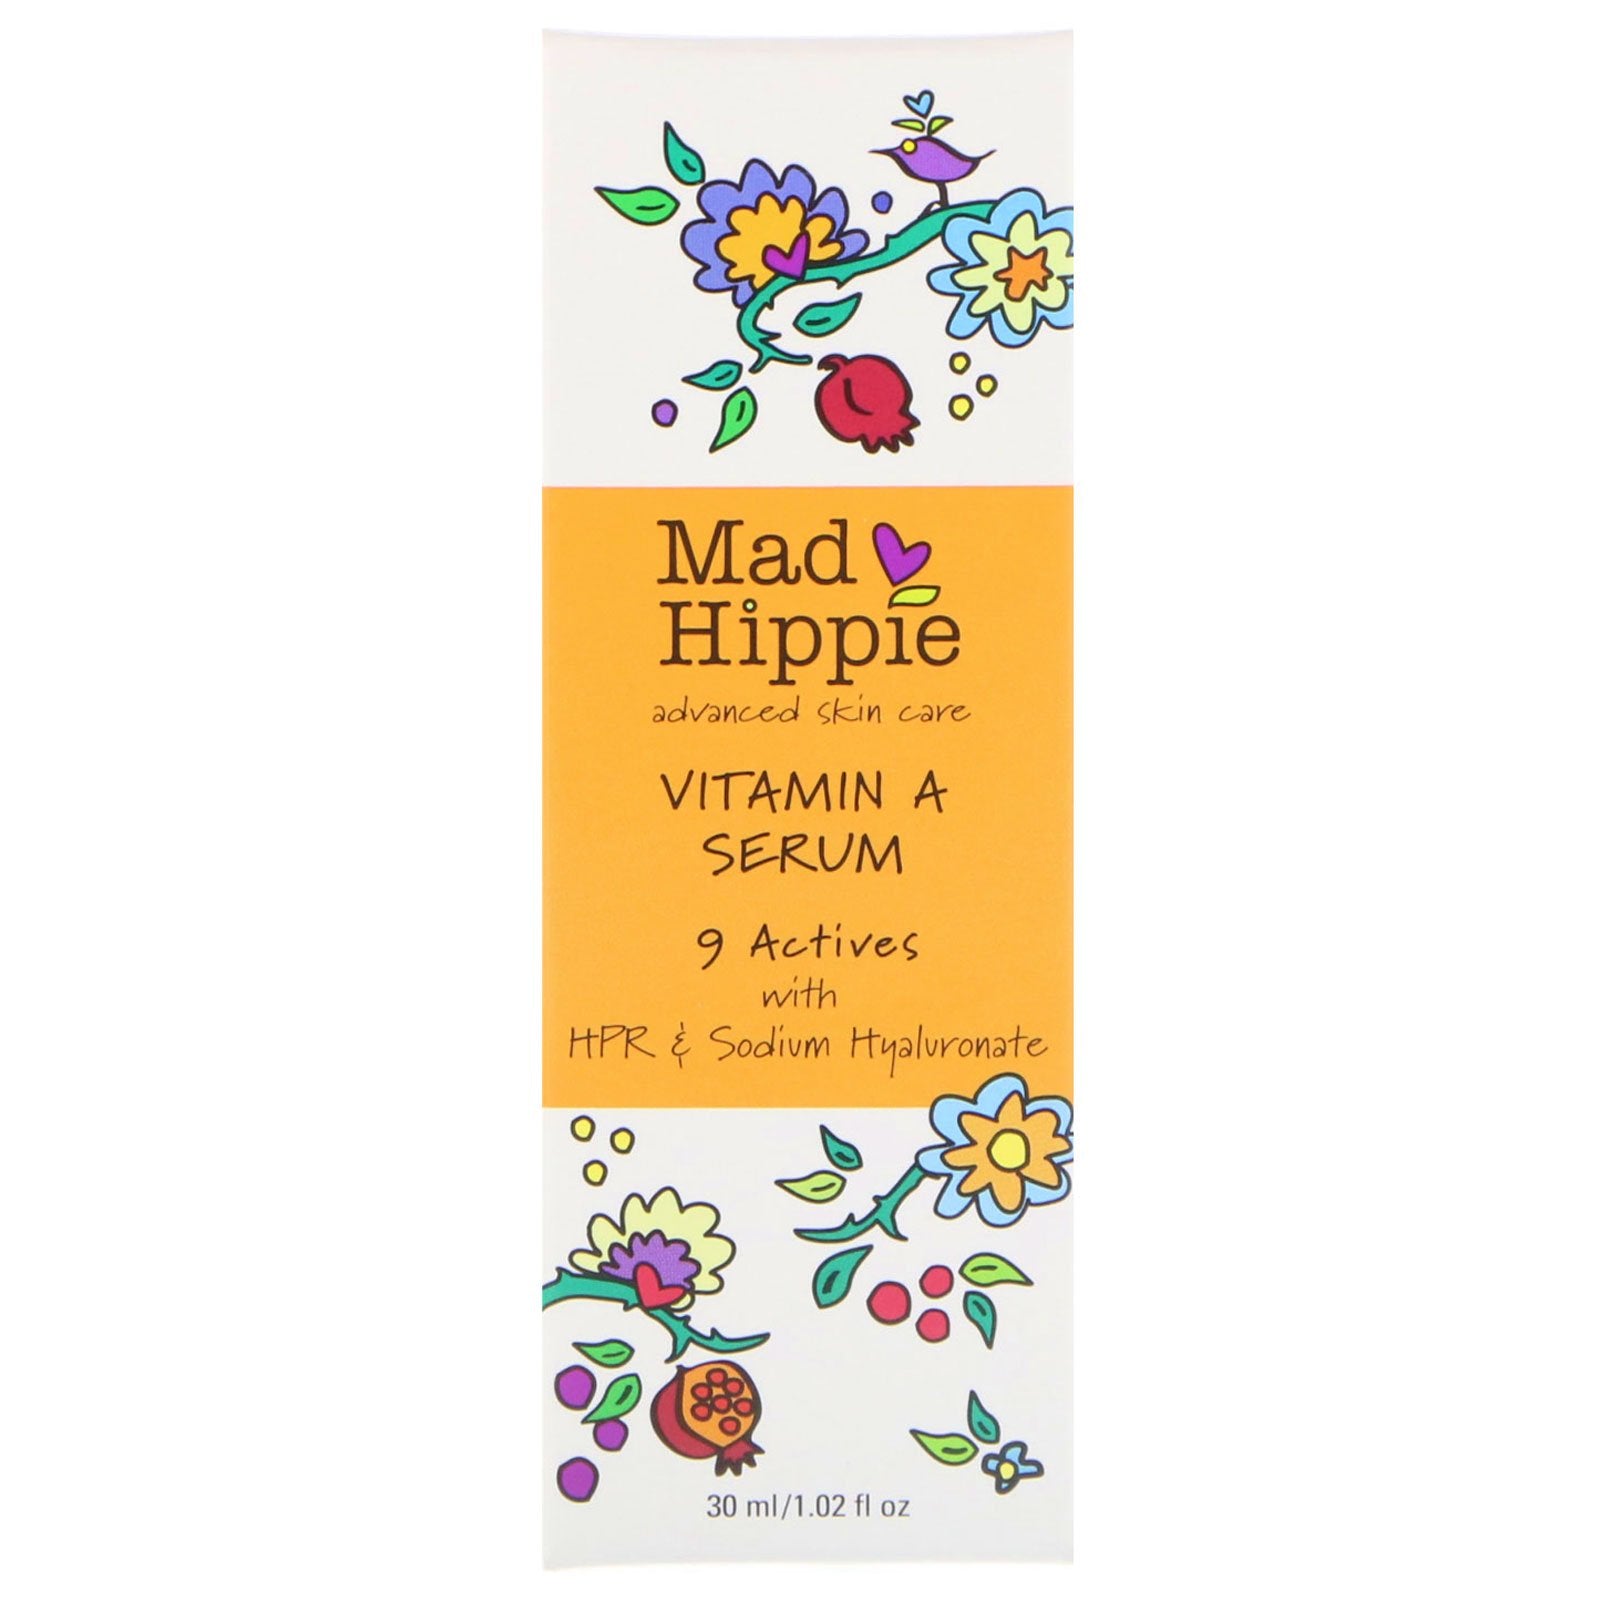 Mad hippie, sérum de vitamine A - Mad Hippie